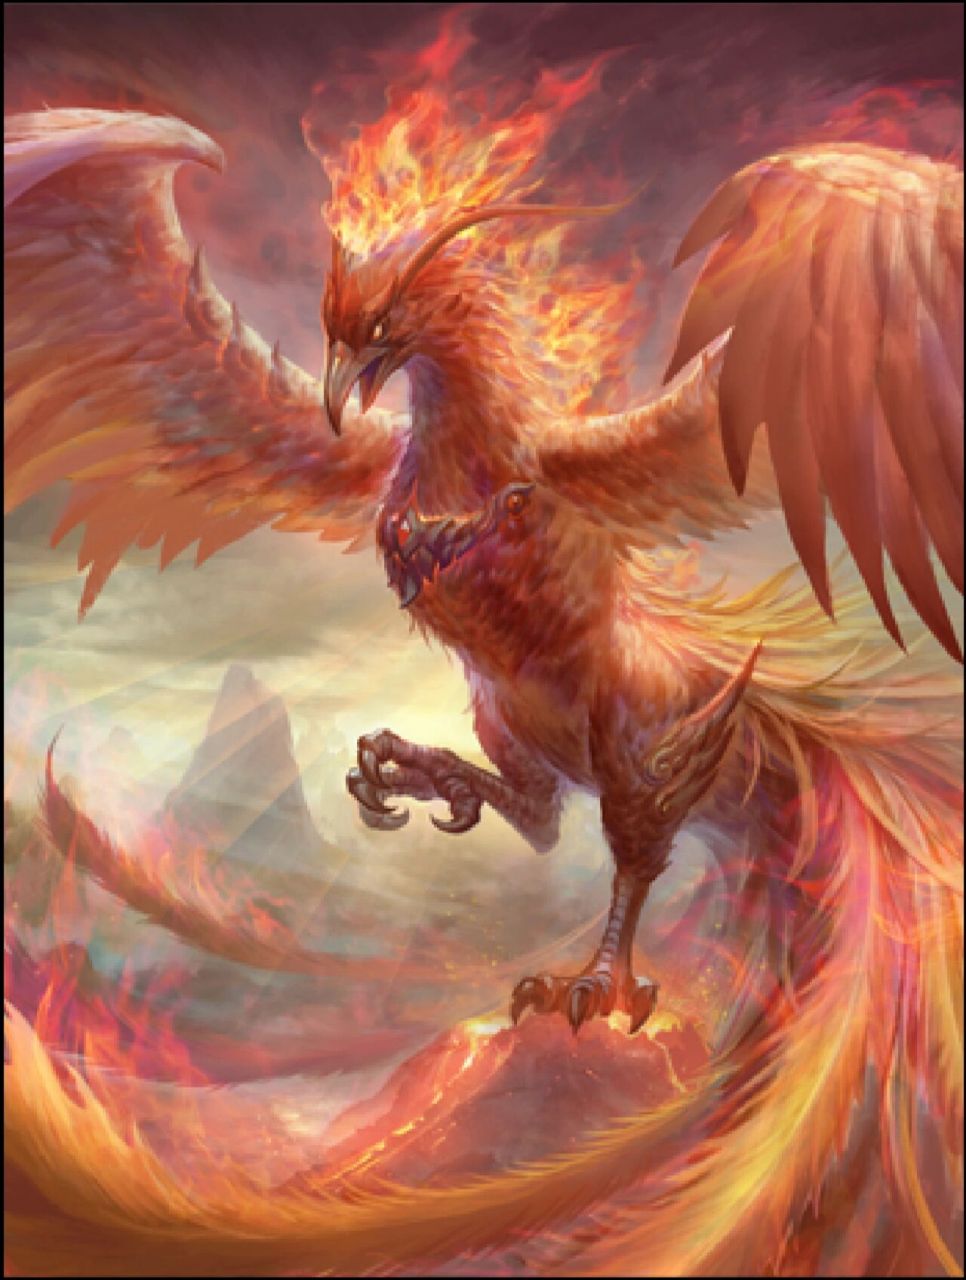 朱雀,是中国古代神话中的天之四灵之一,源于远古星宿崇拜,是代表炎帝